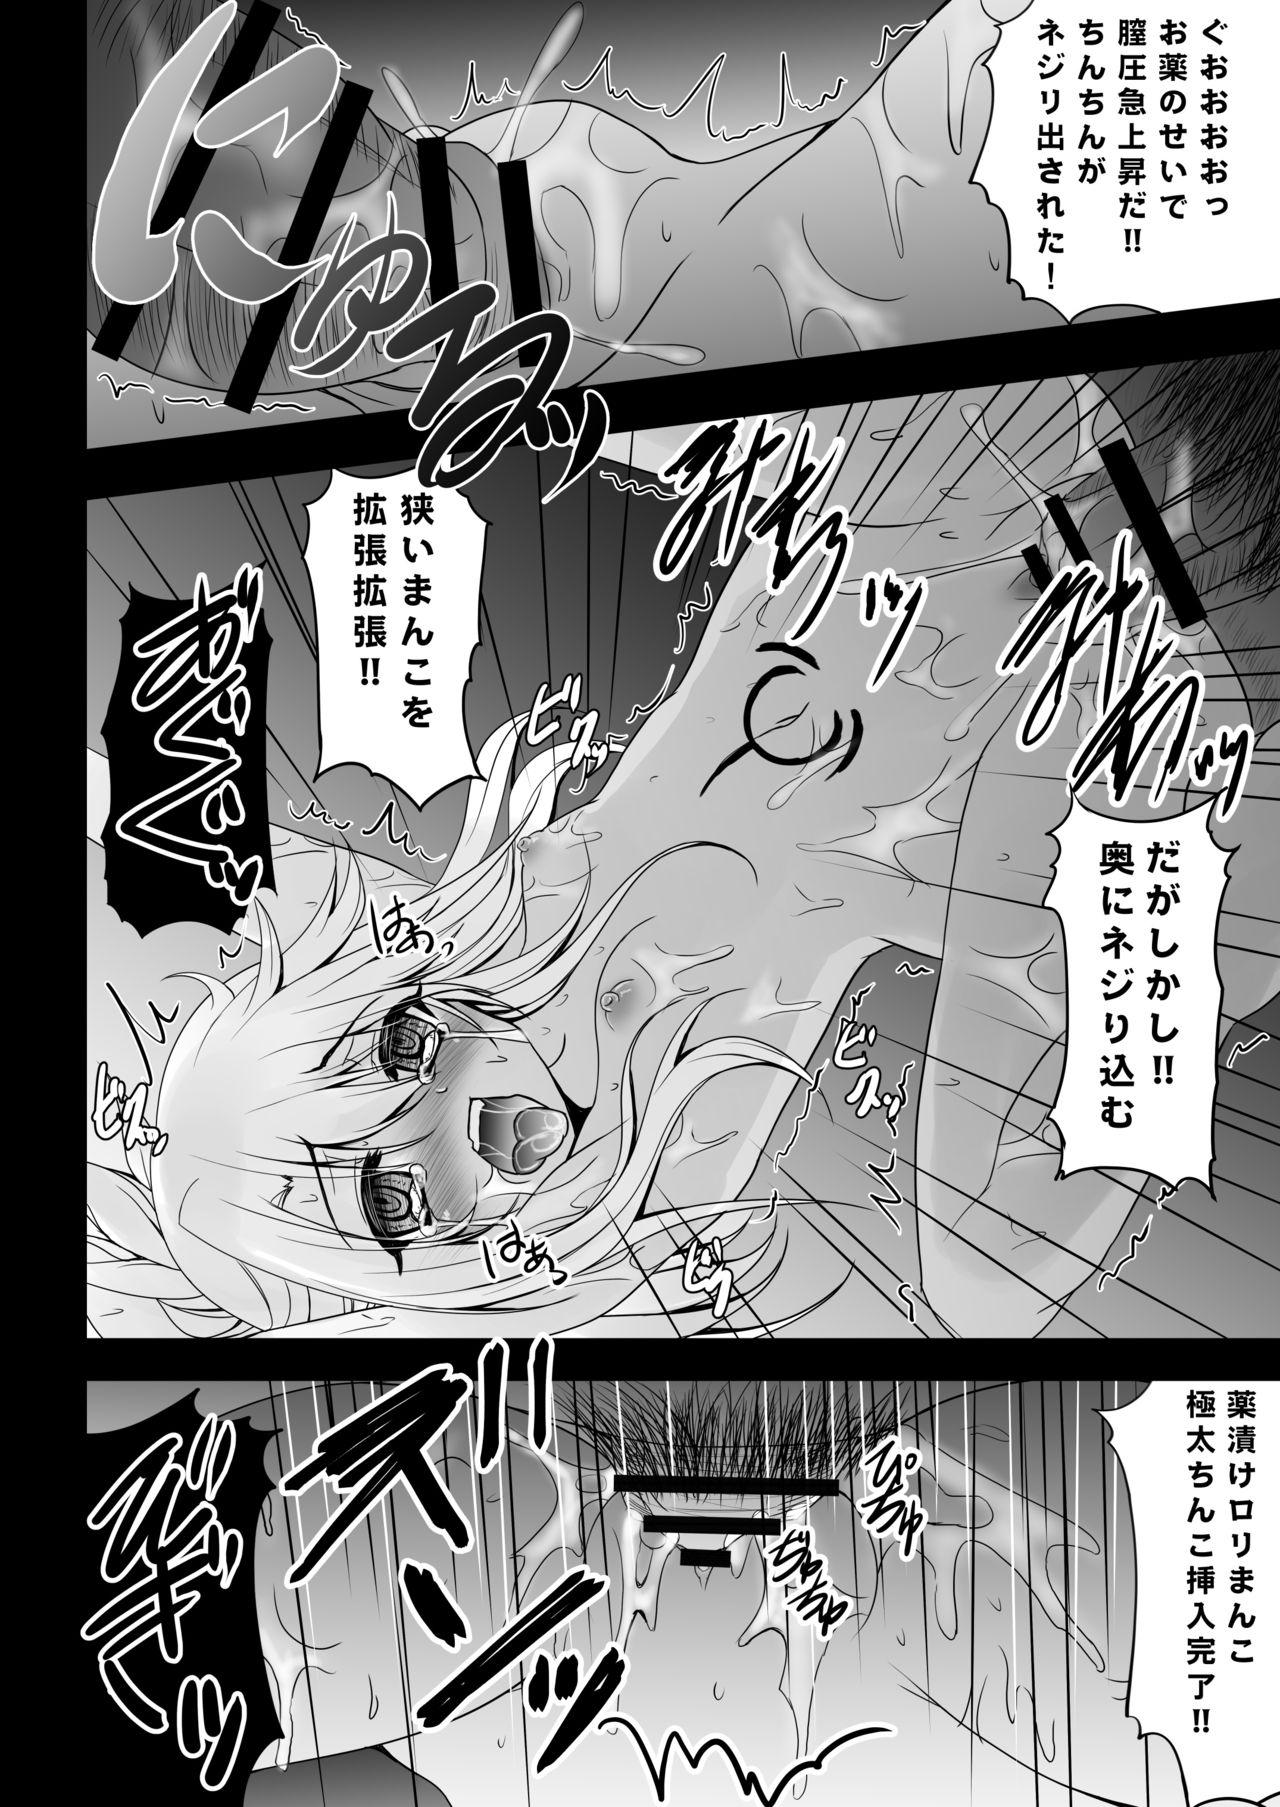 Bigbooty Kusurizuke Kuro no Susume - Fate kaleid liner prisma illya Camporn - Page 11